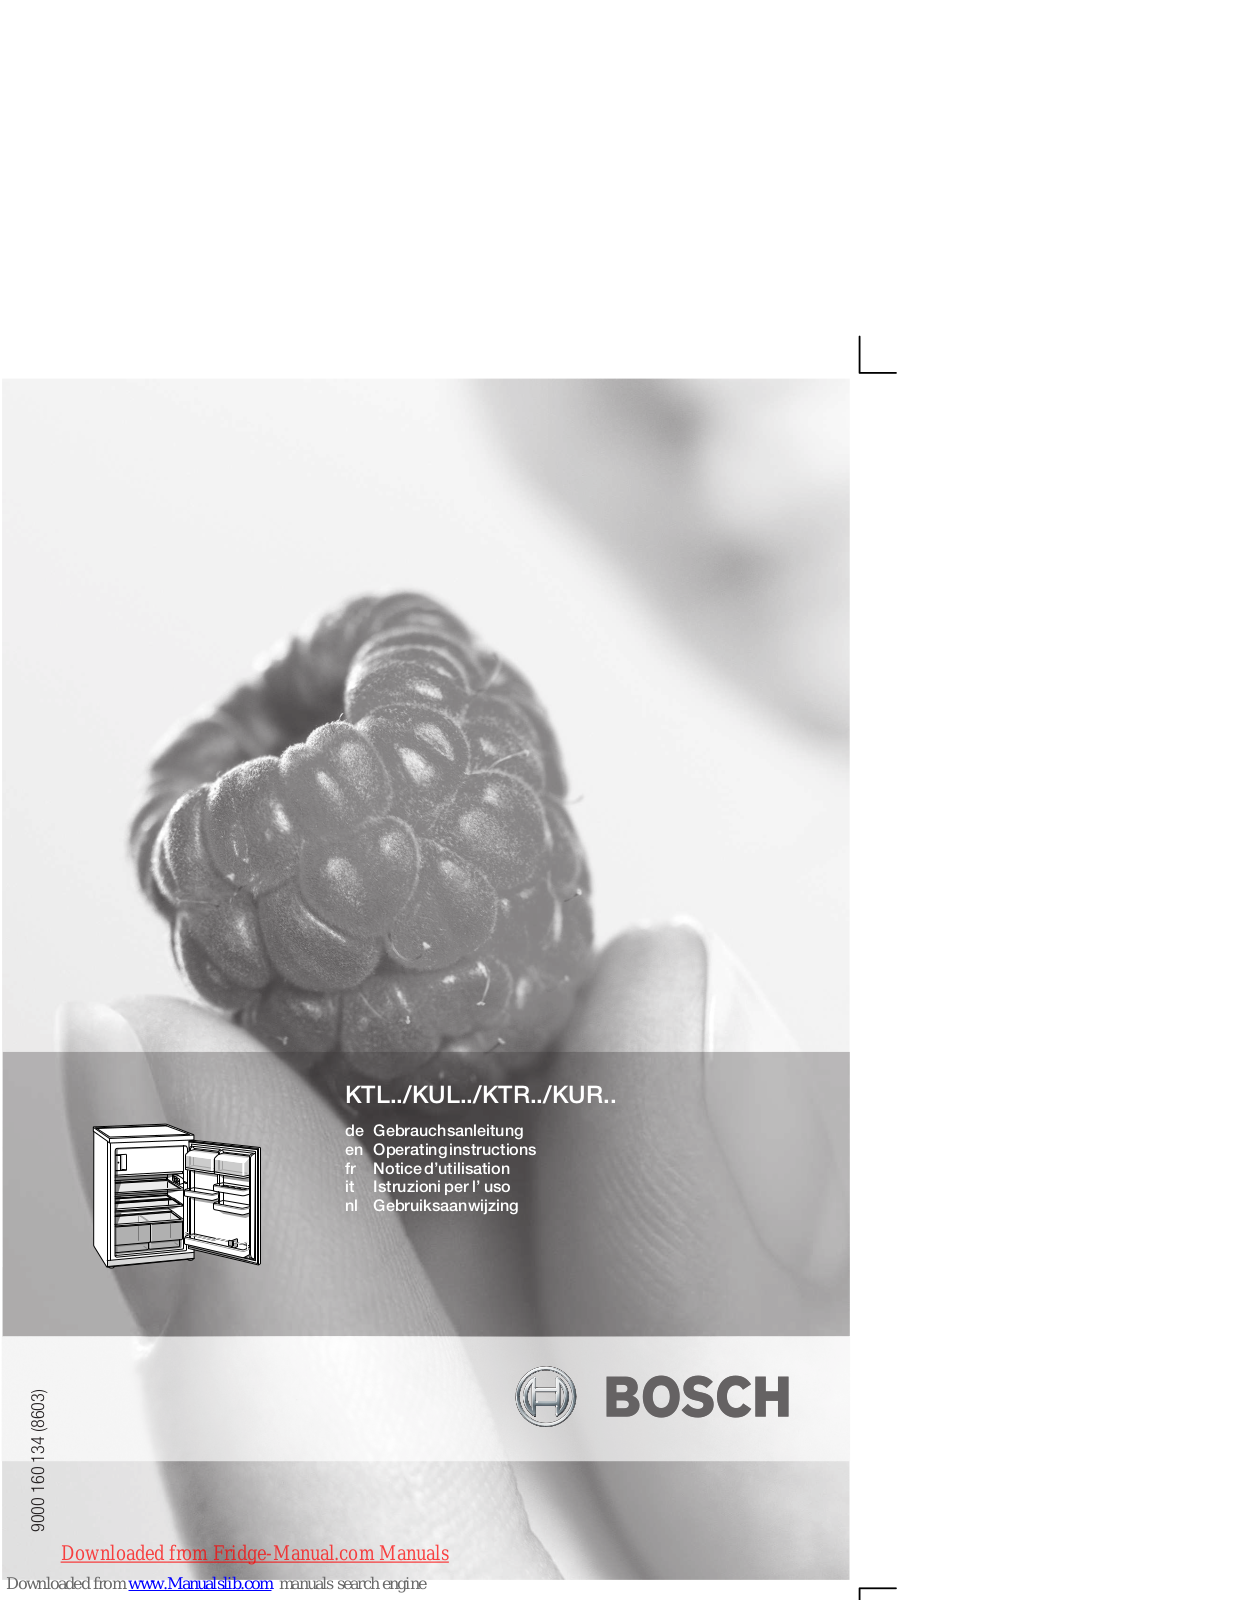 Bosch KTL, KUL, KTR, KUR Operating Instructions Manual